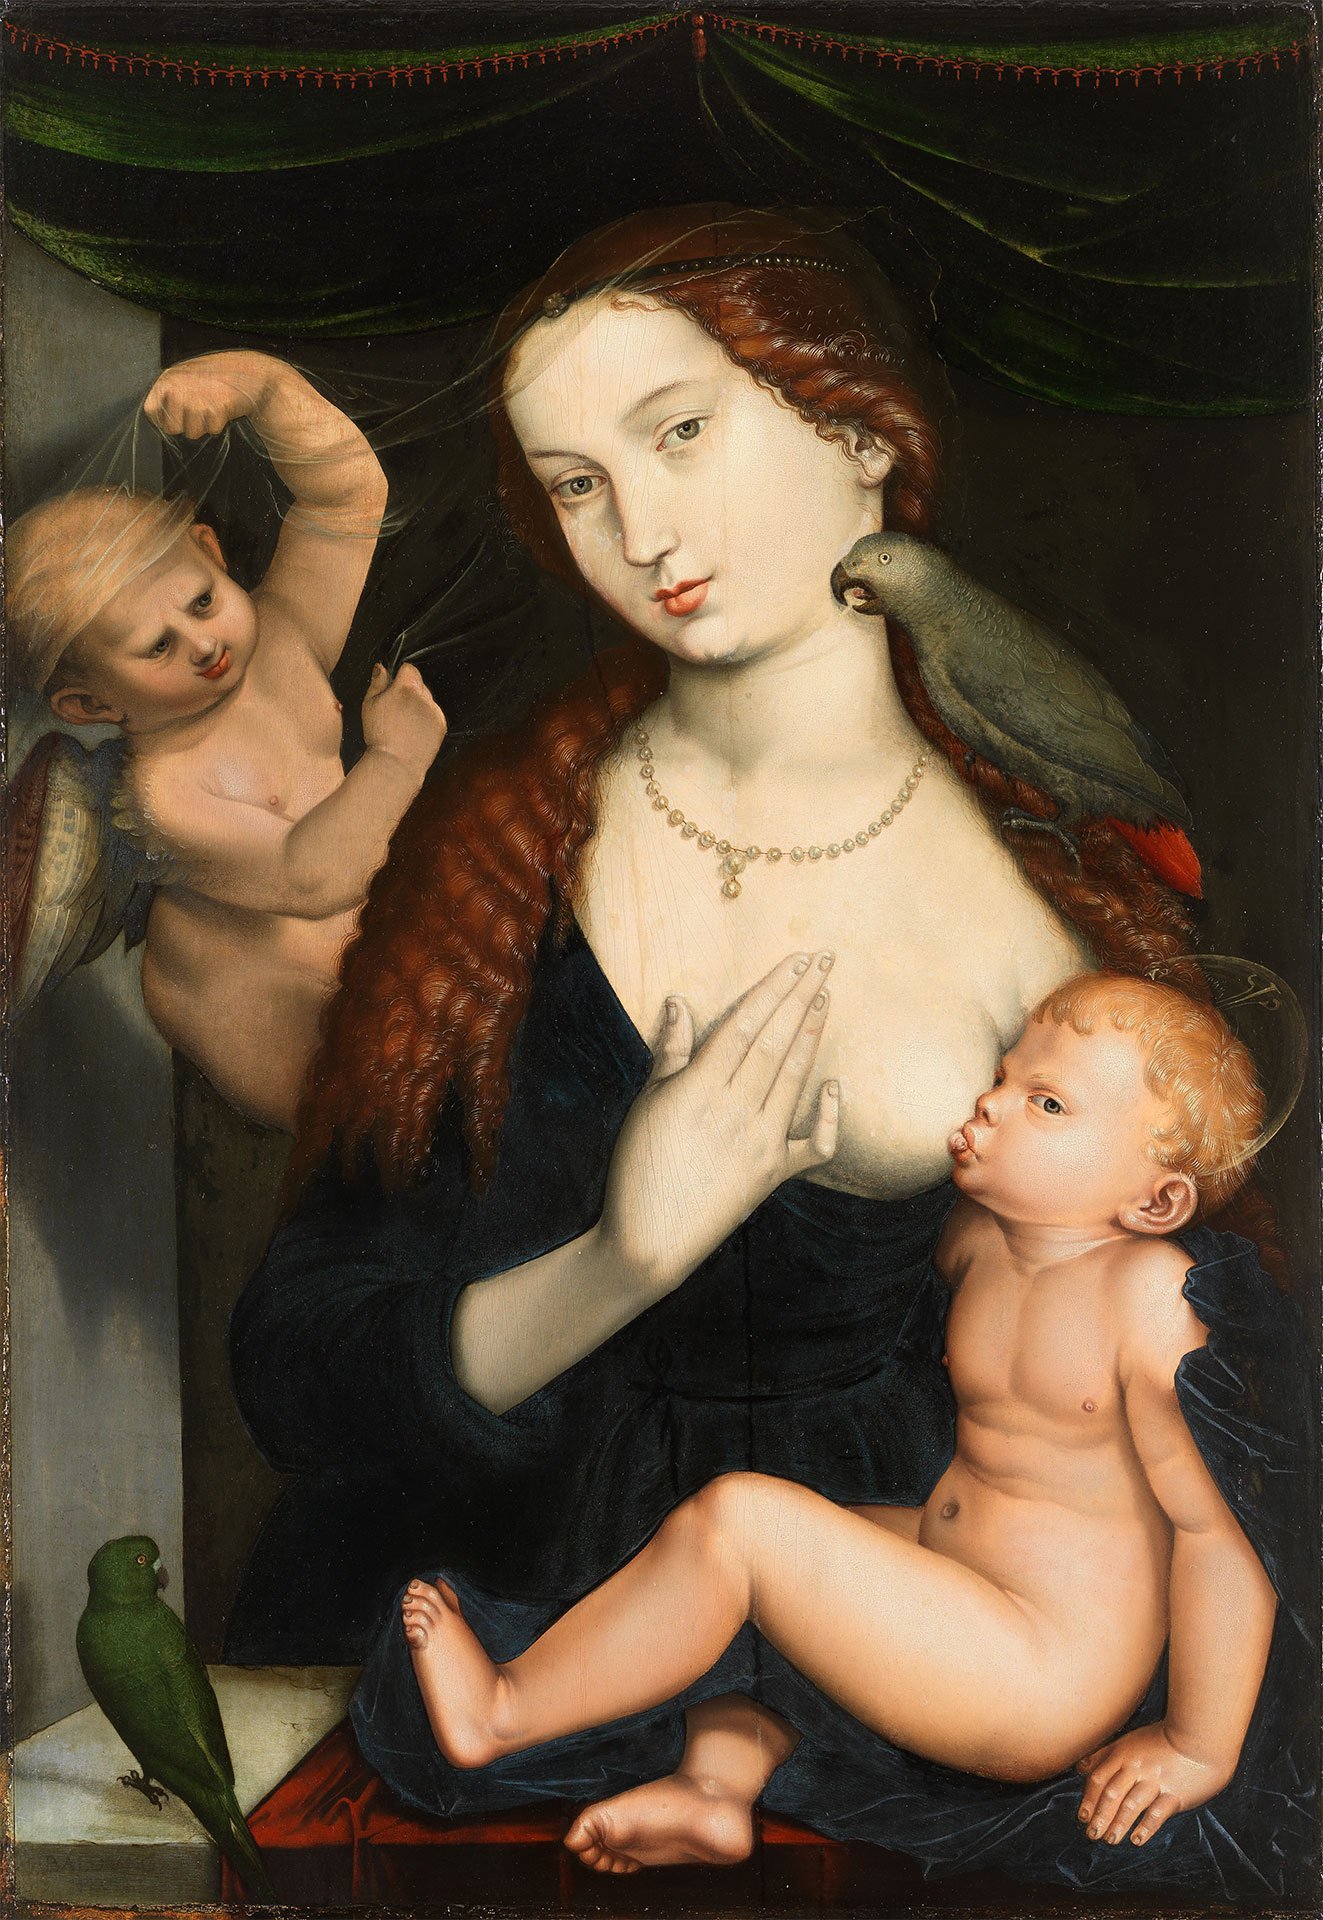 Abbildung des Werks "Maria mit Kind und Papageien" des Künstlers Hans Baldung Grien. Es zeigt eine junge Frau, die ein Kind auf ihrem Schoss hat. Das Kind saugt an ihrer Brust. Auf der rechten Schulter sitzt ein Vogel. Links ist ein Engel zu sehen.